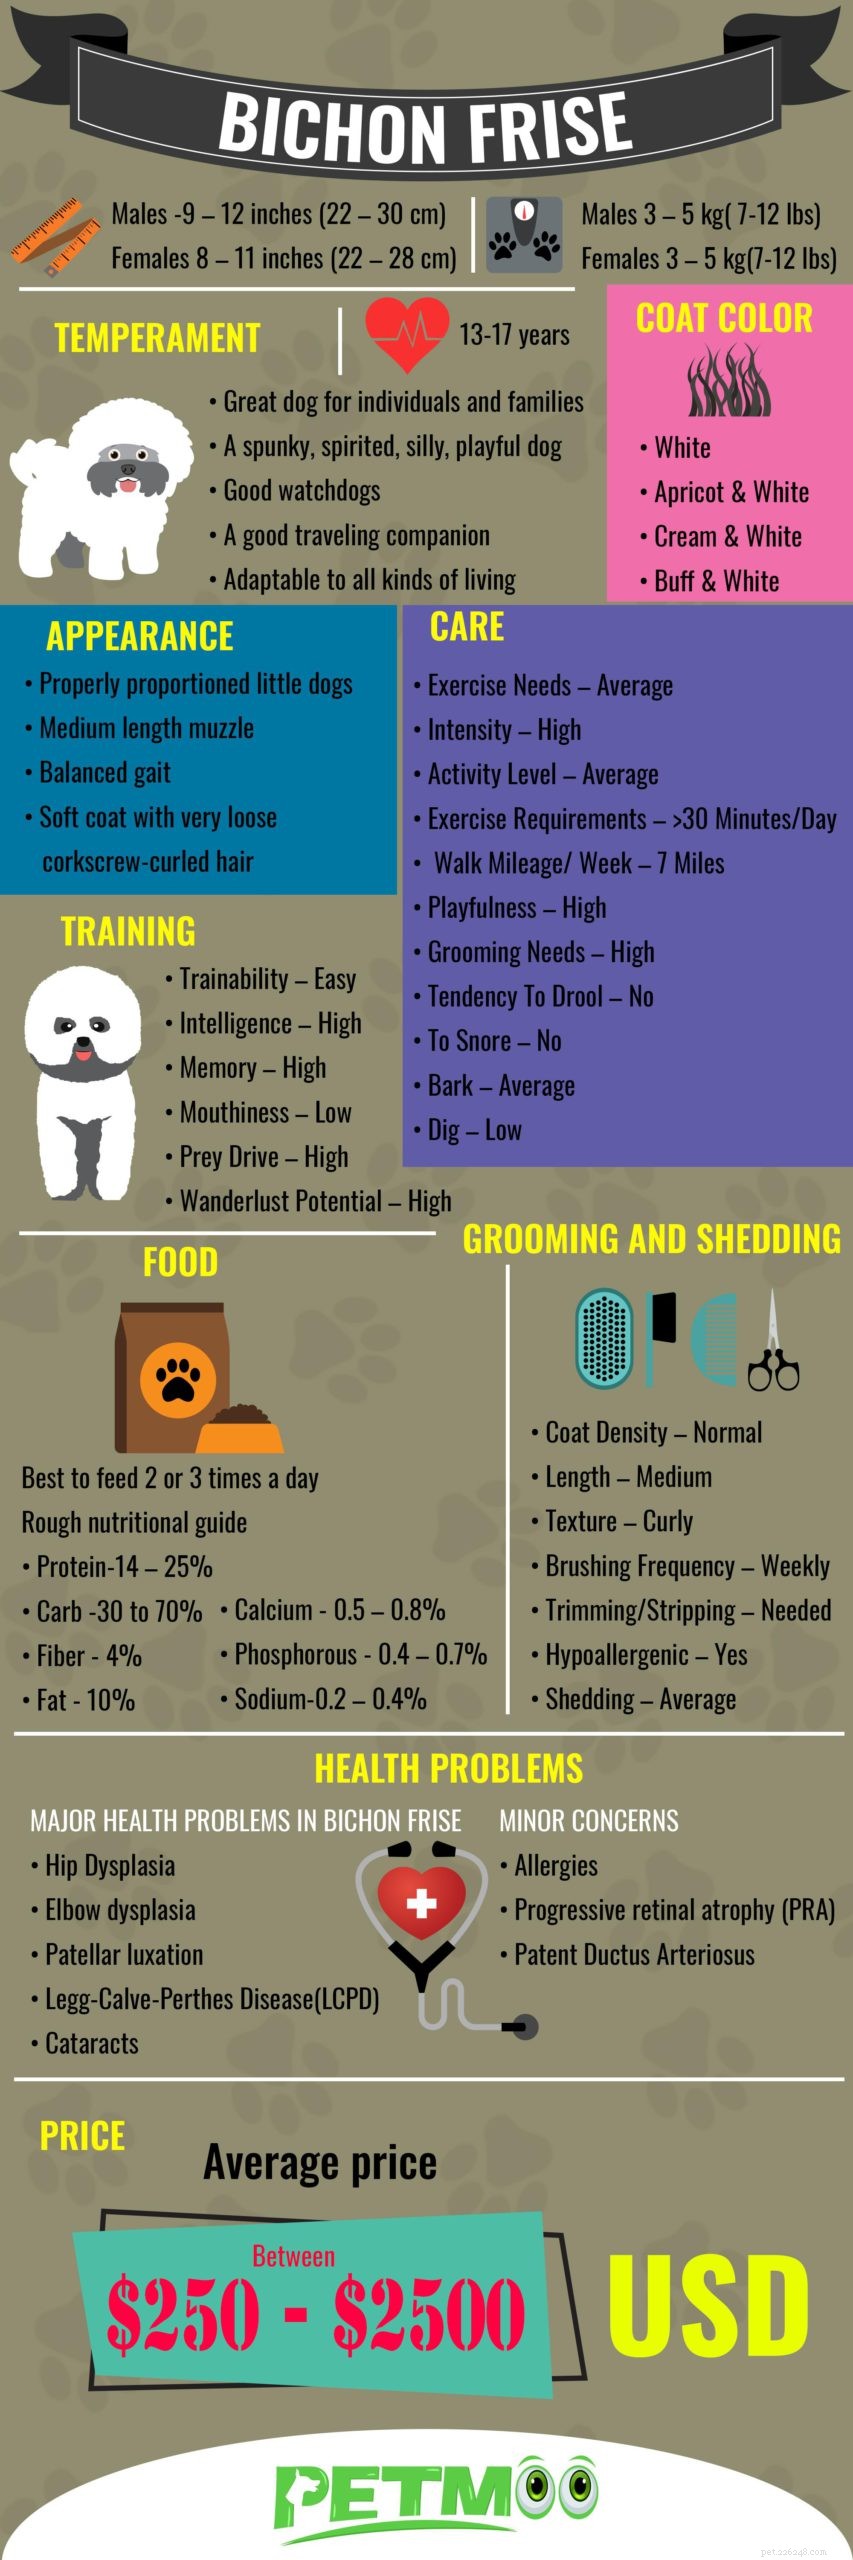 Bichon Frise – Informações completas sobre a raça do cão